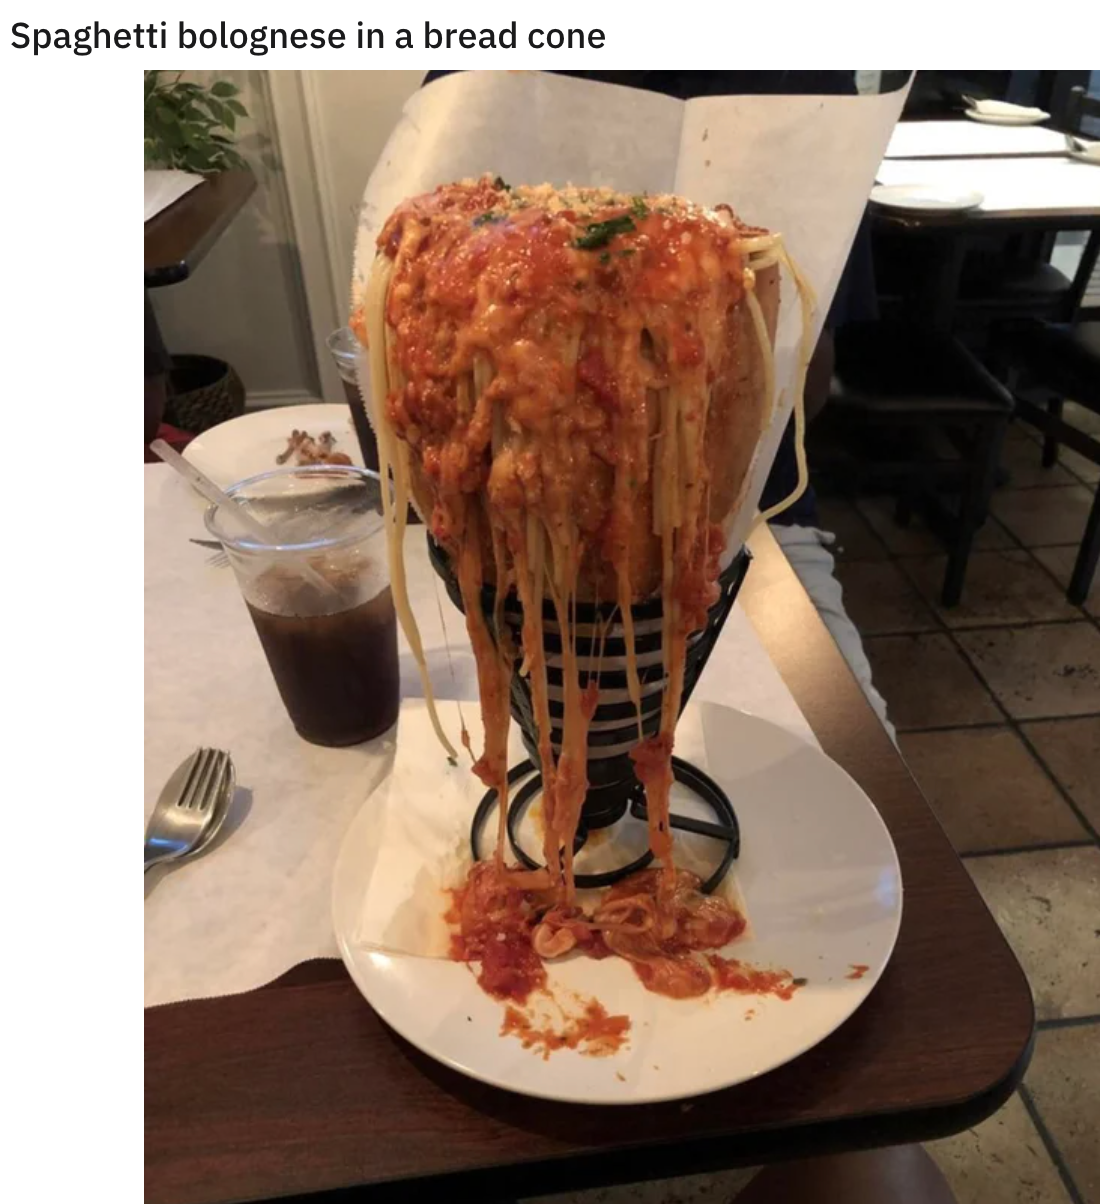 funny food pics - Spaghetti bolognese in a bread cone